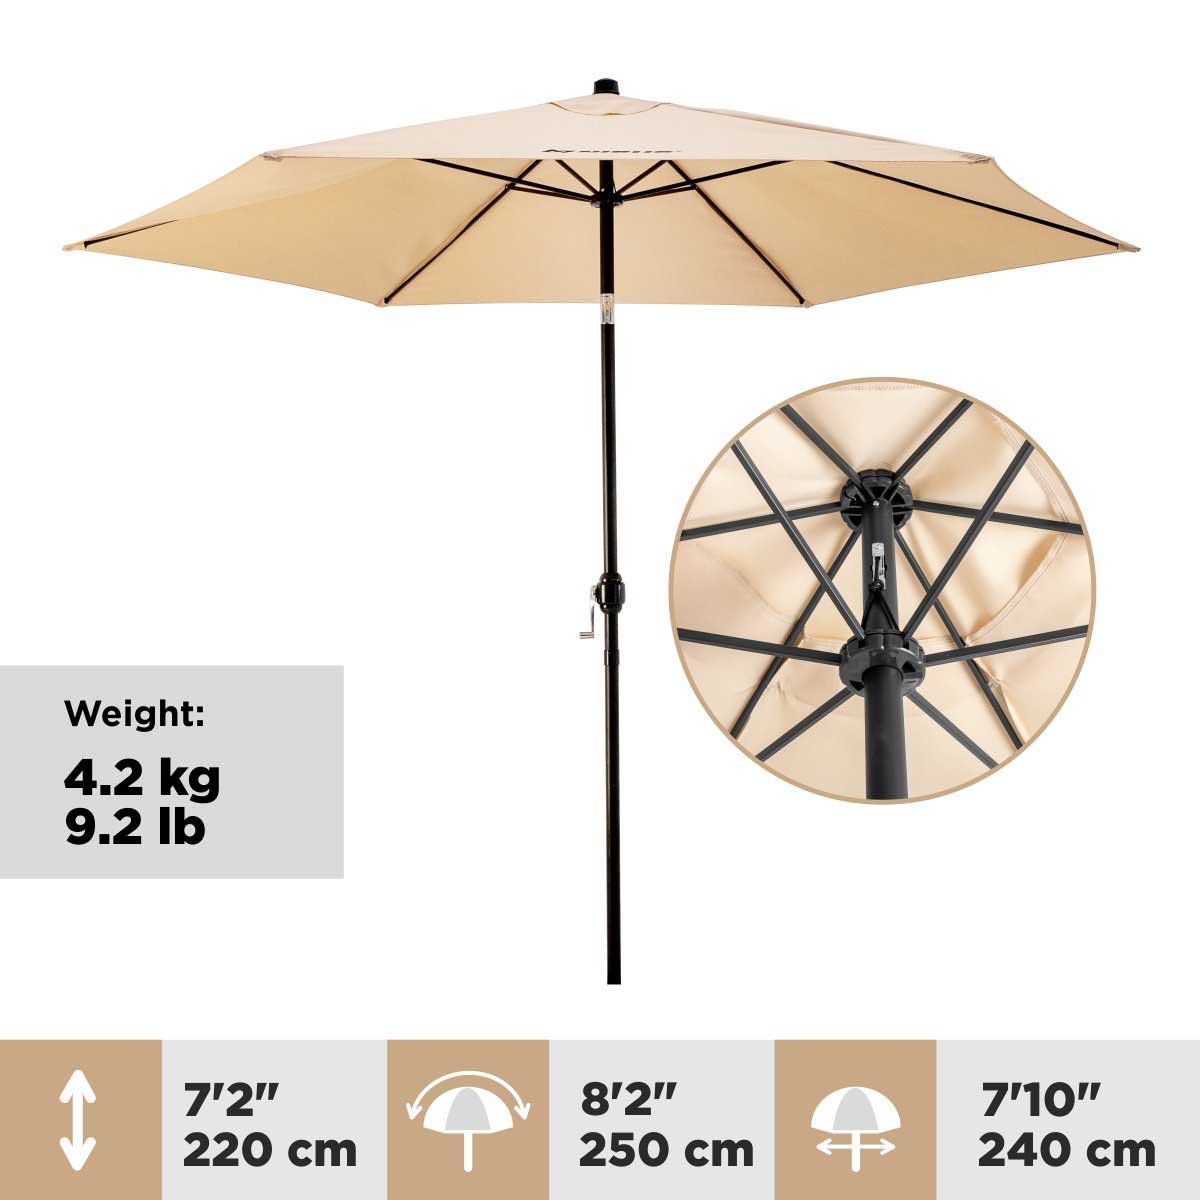 7.1 feet Patio Garden Large Folding Tilting Umbrella is 7.2 feet high and weighs 9.2 lbs